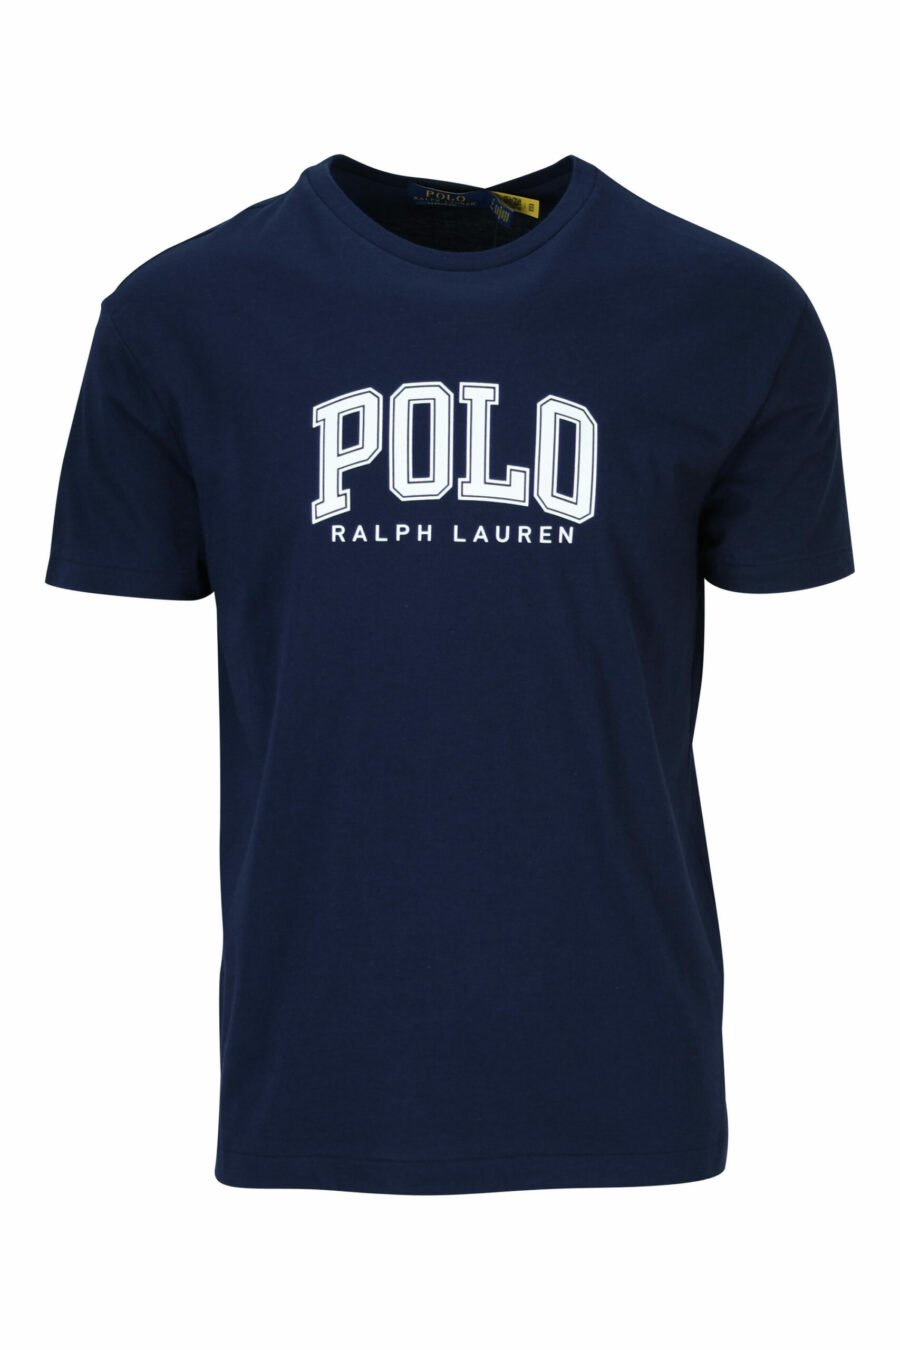 Dunkelblaues T-Shirt mit weißem "Polo"-Maxilogo - 3616535909311 skaliert